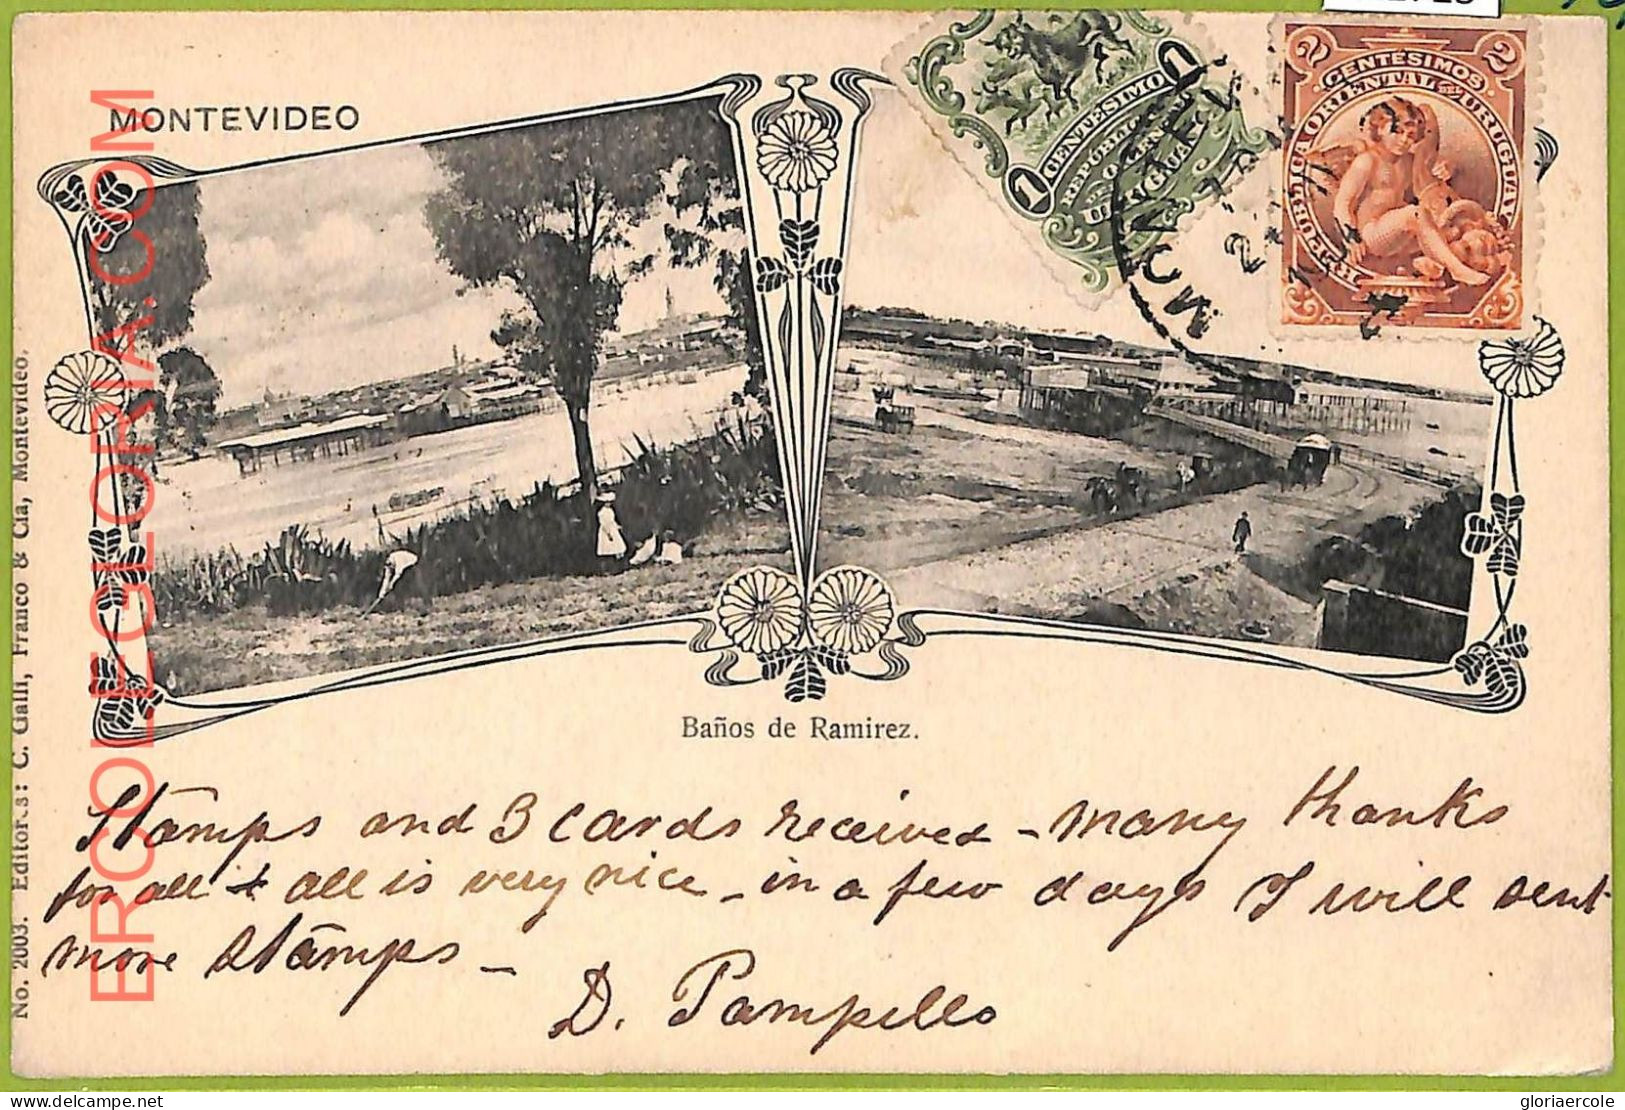 Af2723 - URUGUAY - VINTAGE POSTCARD - MONTEVIDEO - 1904 - Uruguay